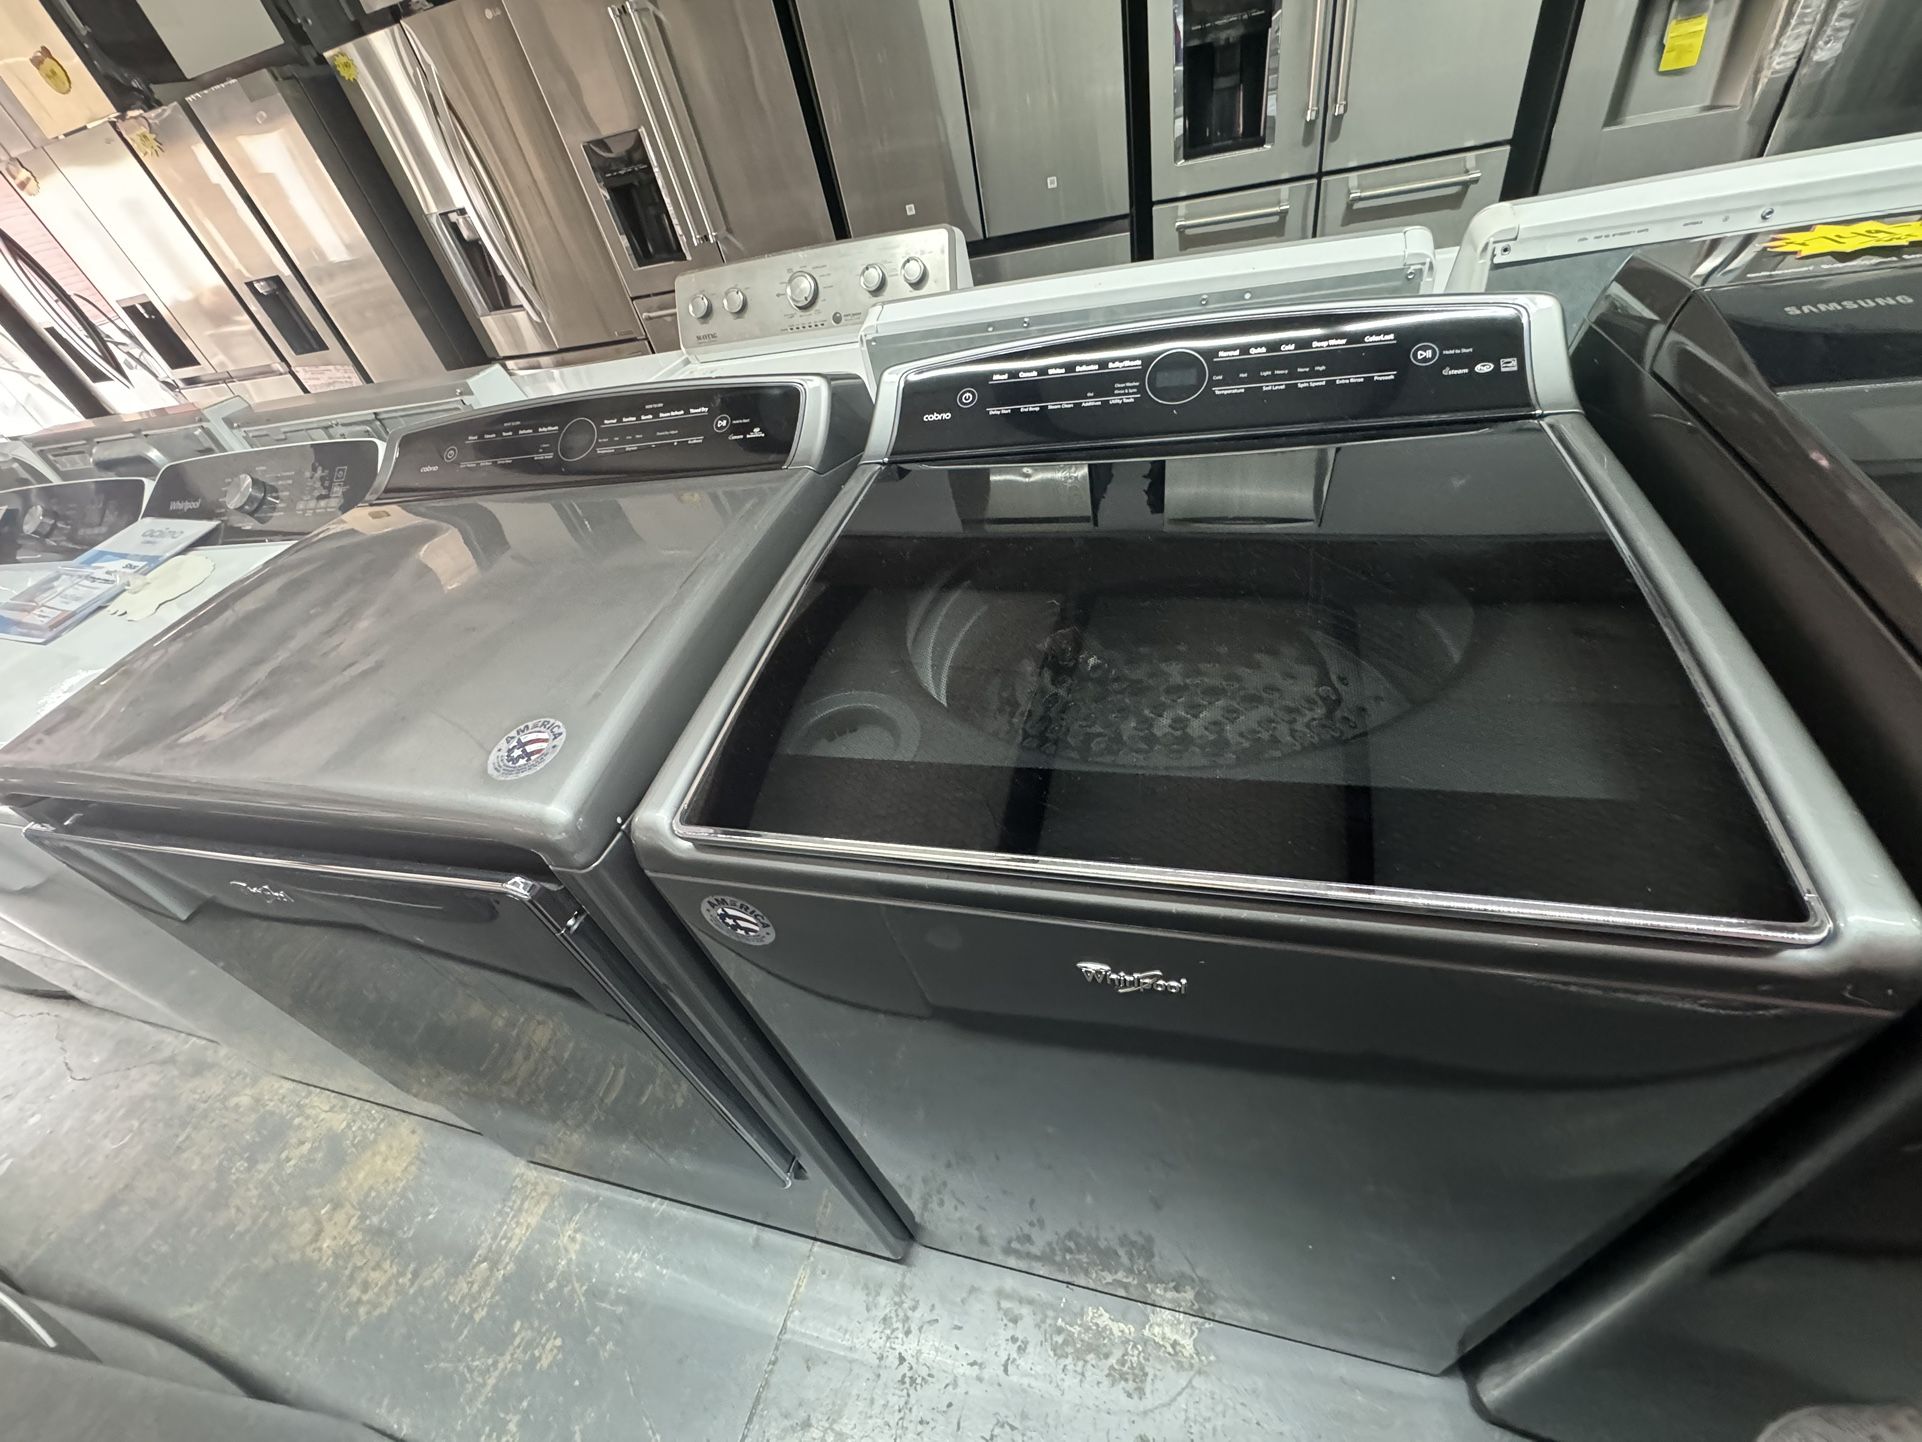 Whirlpool Cabrio 5.3 CuFt Washer & Dryer Set